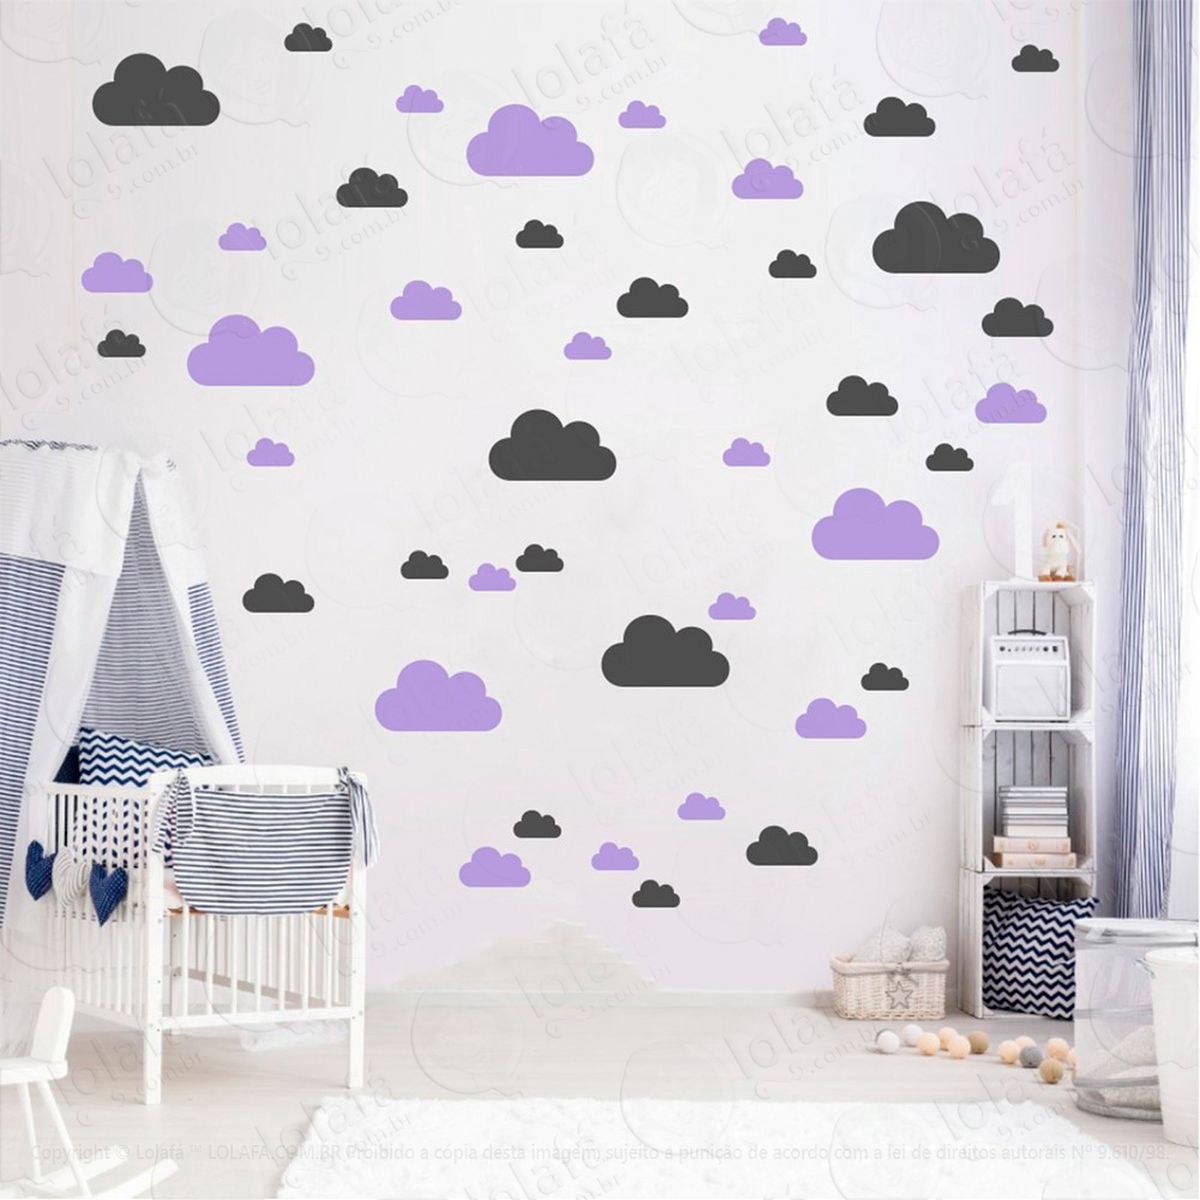 adesivos nuvens 78 peças adesivos para quarto de bebê infantil - mod:754